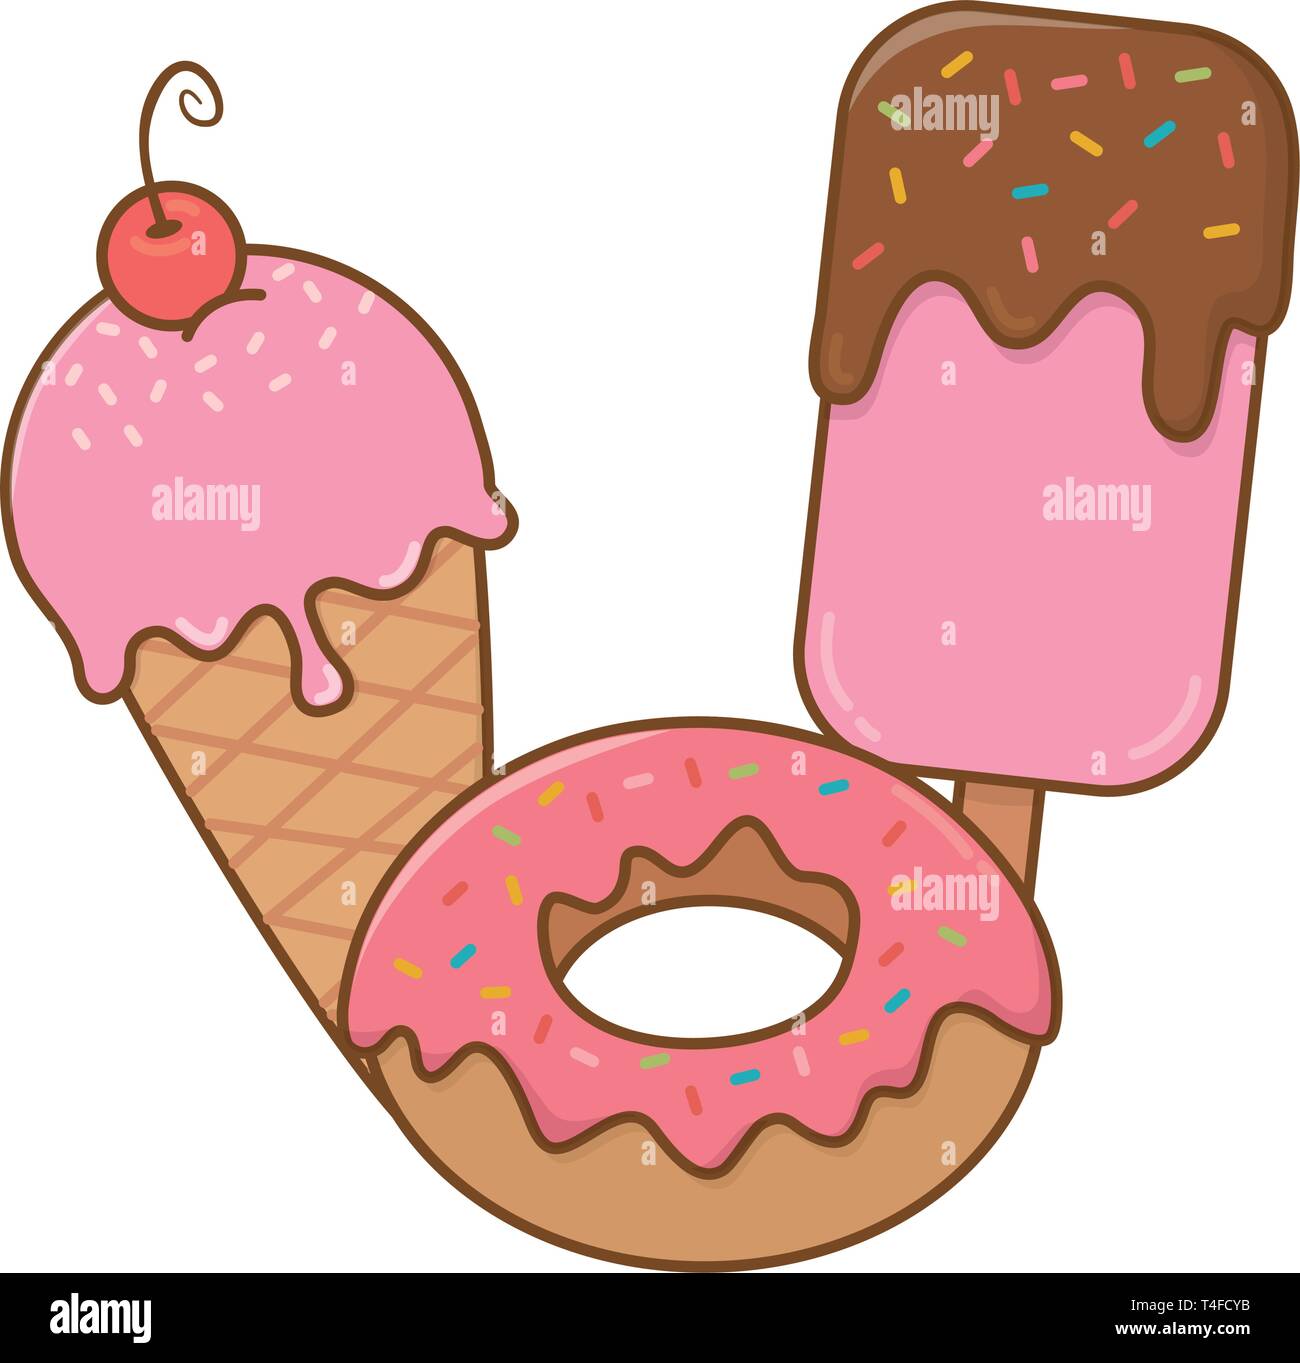 Eis und Eis am Stiel und Donut Symbol cartoon Vector Illustration graphic design Stock Vektor